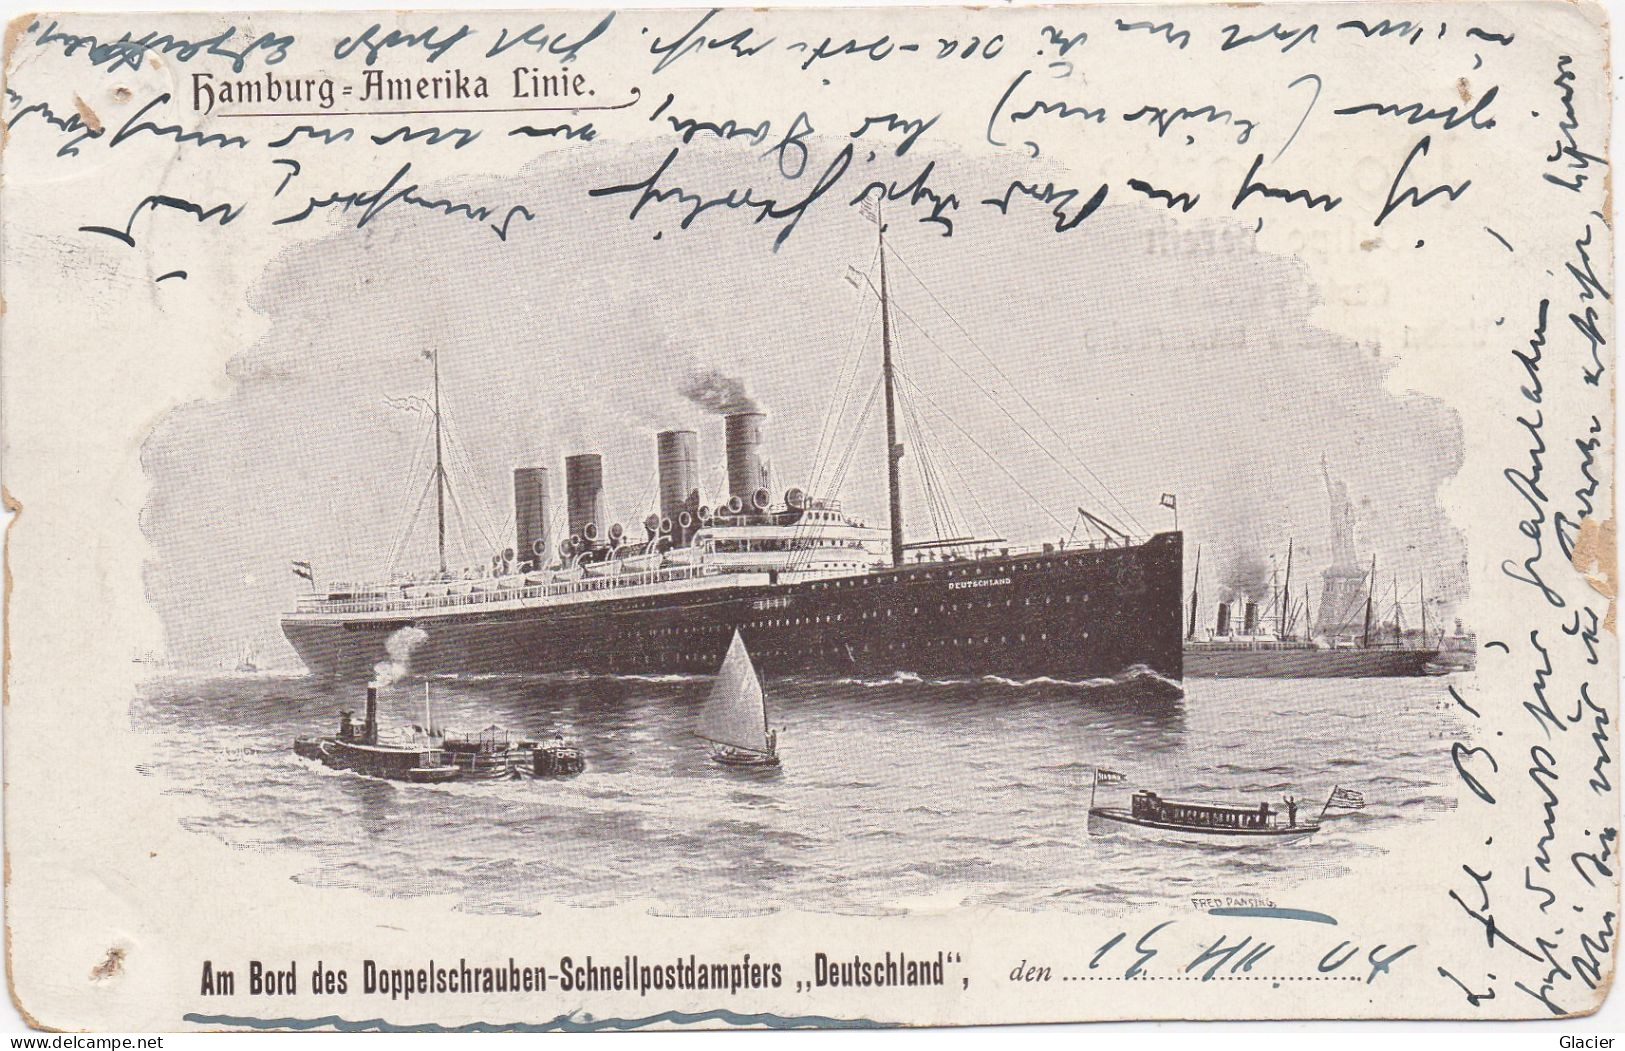 DEUTSCH - AMERIK. SEEPOST - Hamburg - Amerika Linie - Am Bord Des Doppelschrauben Schnellpostdampfers Deutschland - Maritime Post